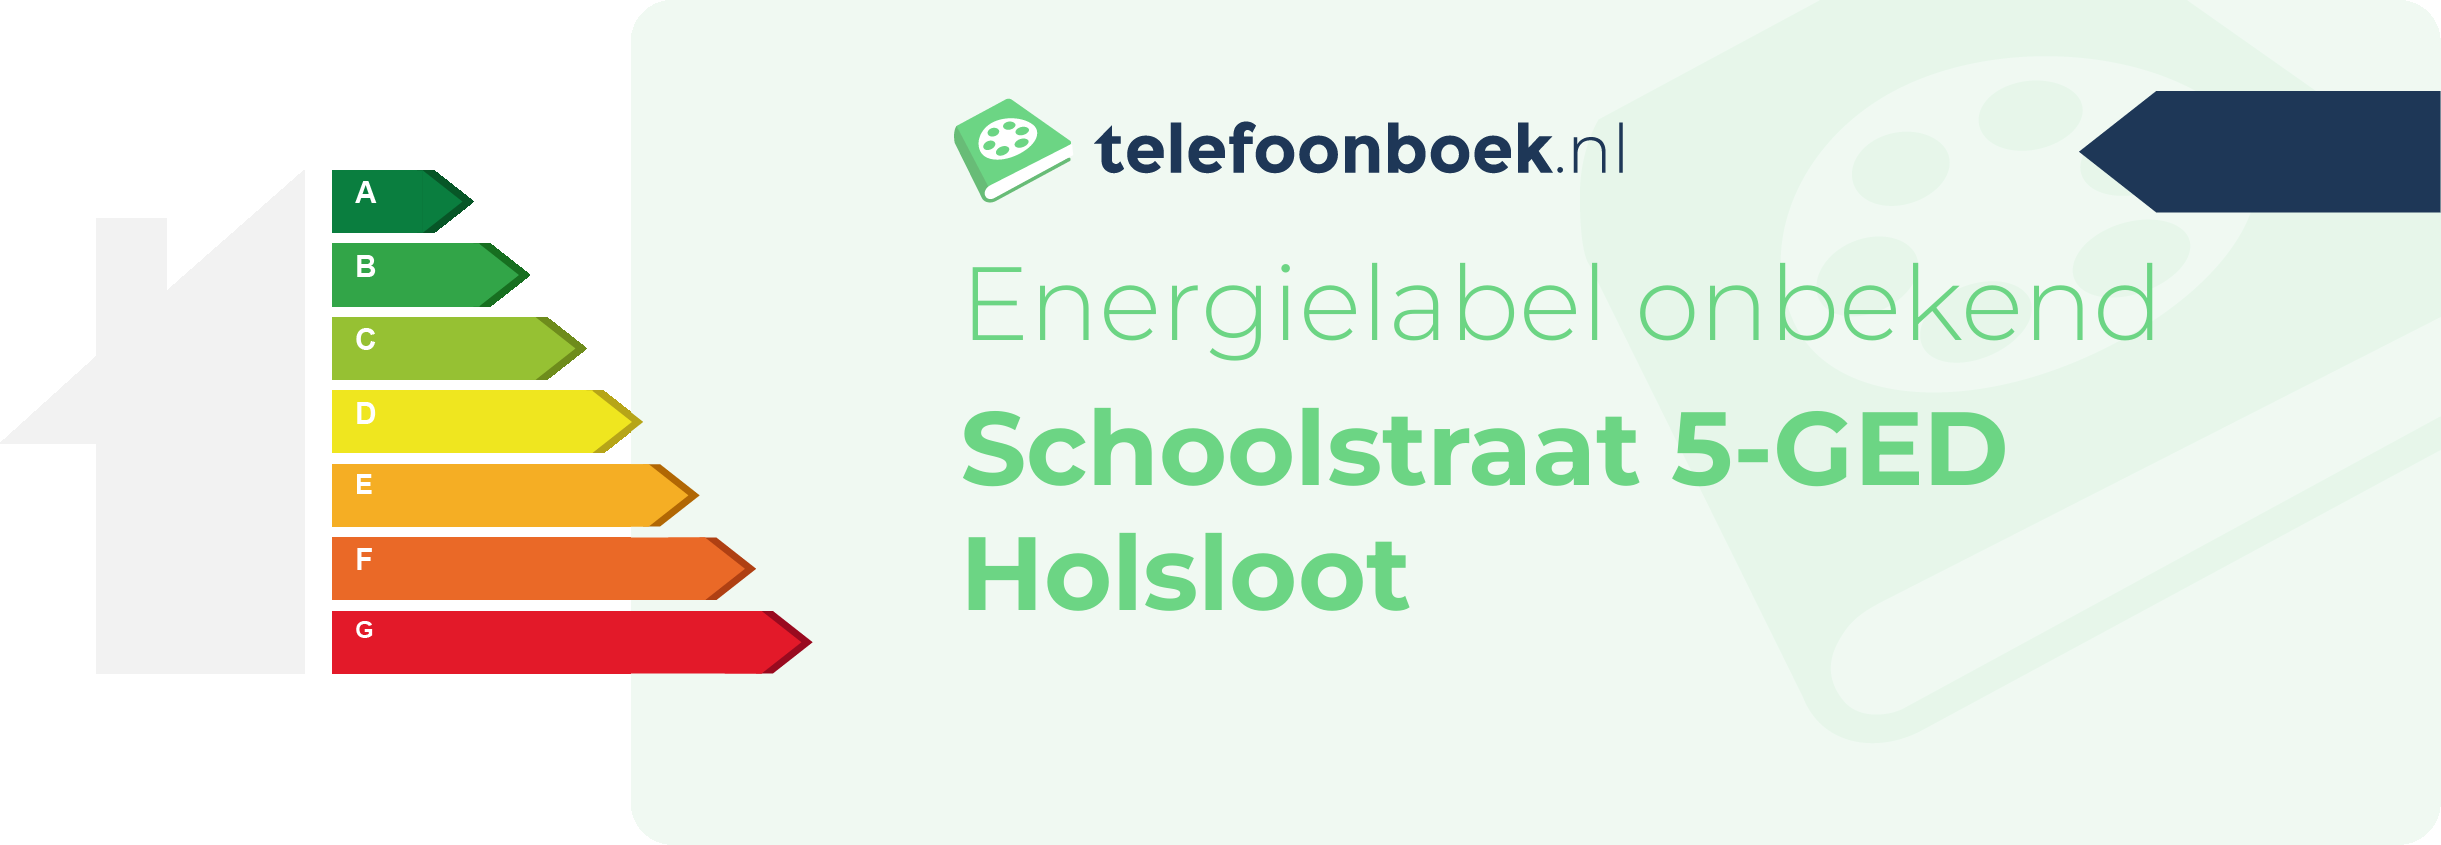 Energielabel Schoolstraat 5-GED Holsloot